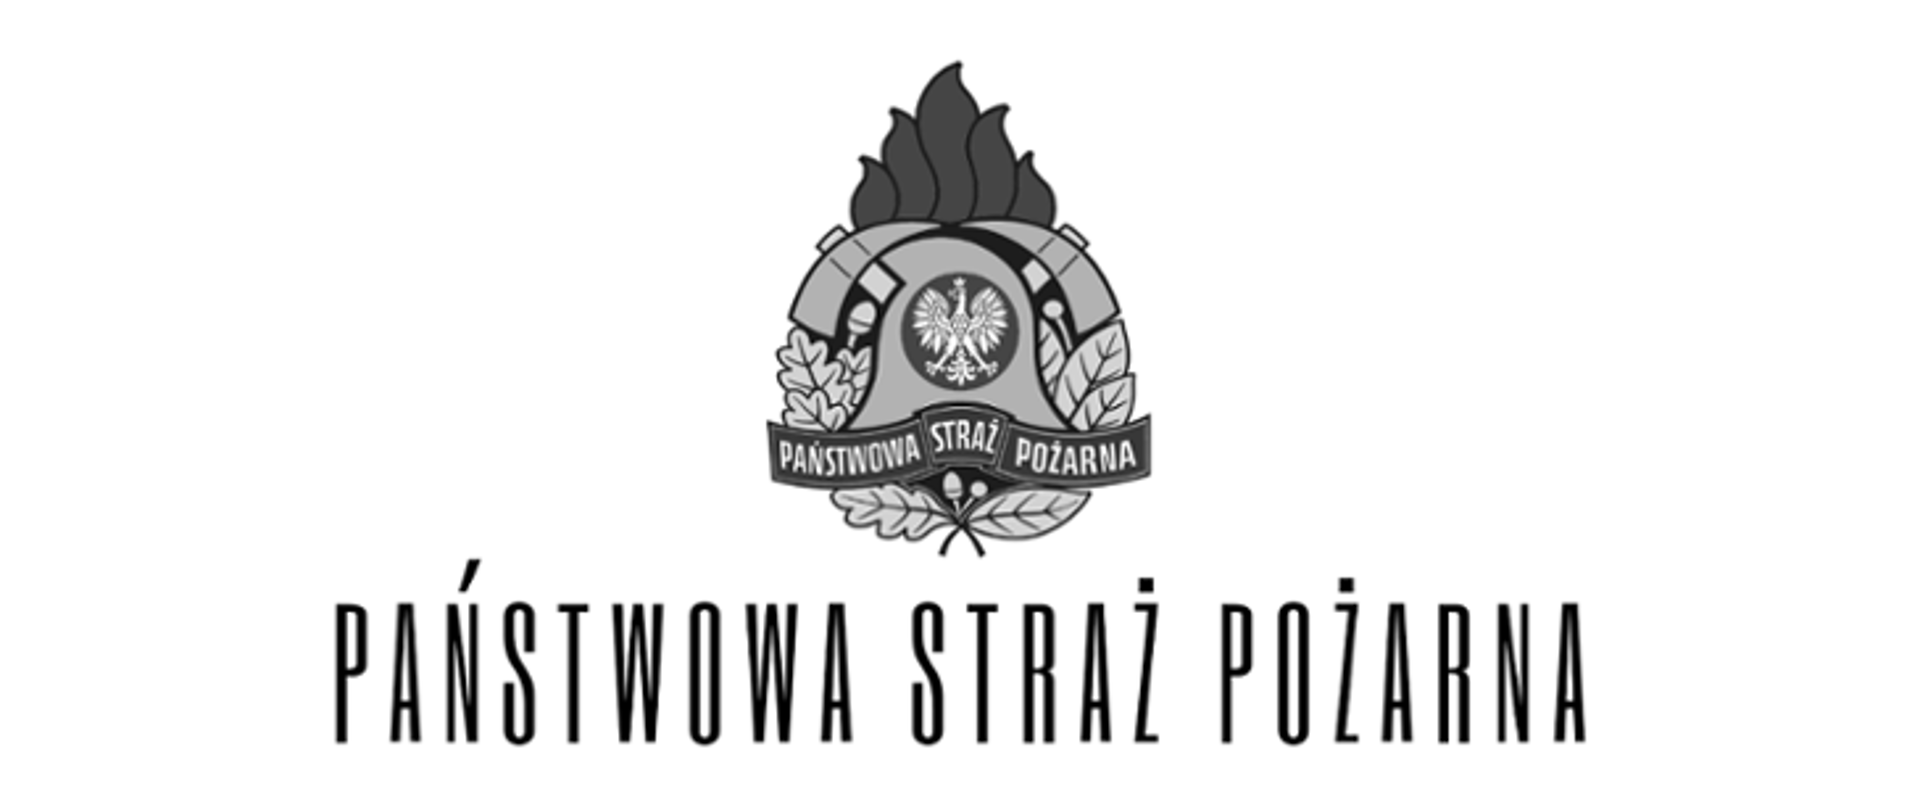 Czarne logo PSP z napisem Państwowa Straż Pożarna